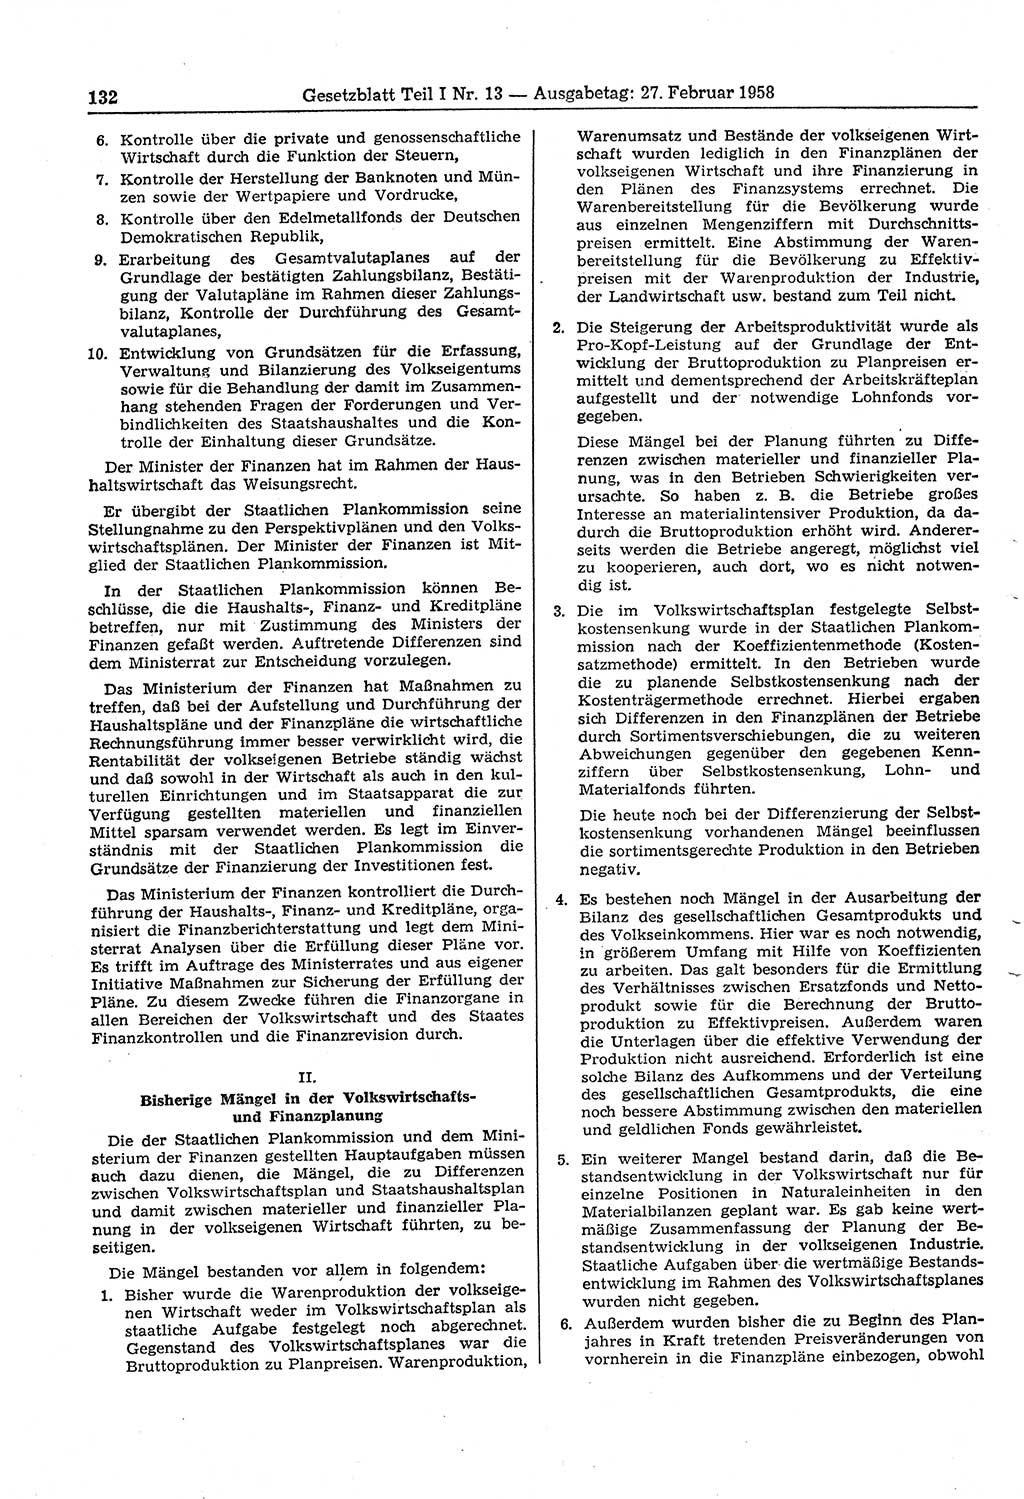 Gesetzblatt (GBl.) der Deutschen Demokratischen Republik (DDR) Teil Ⅰ 1958, Seite 132 (GBl. DDR Ⅰ 1958, S. 132)